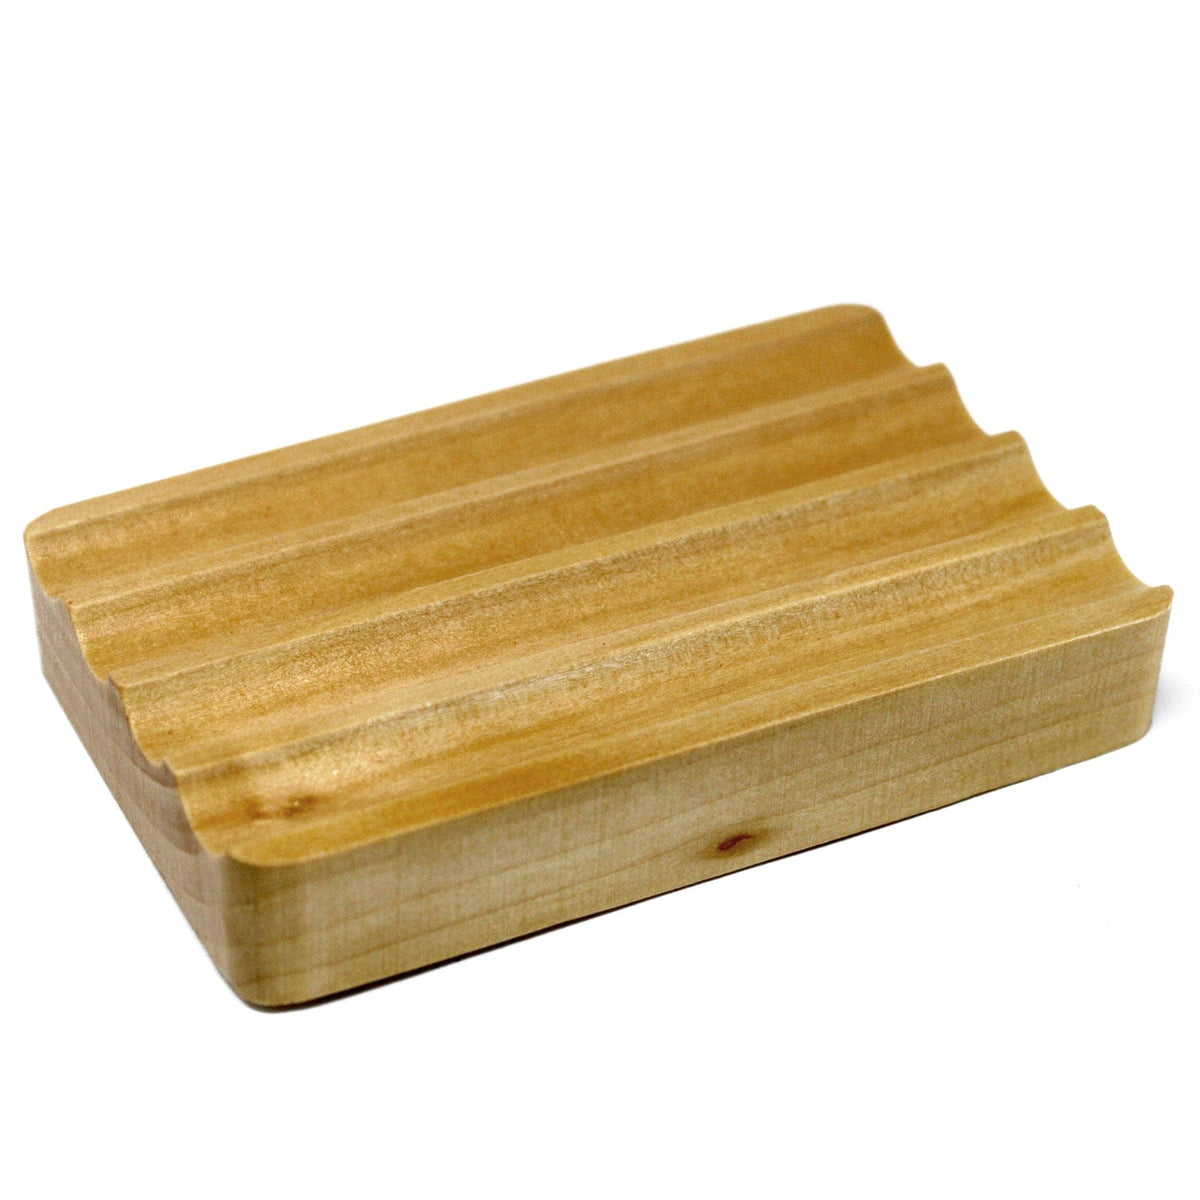 Ancient Wisdom Wooden Soap Dish